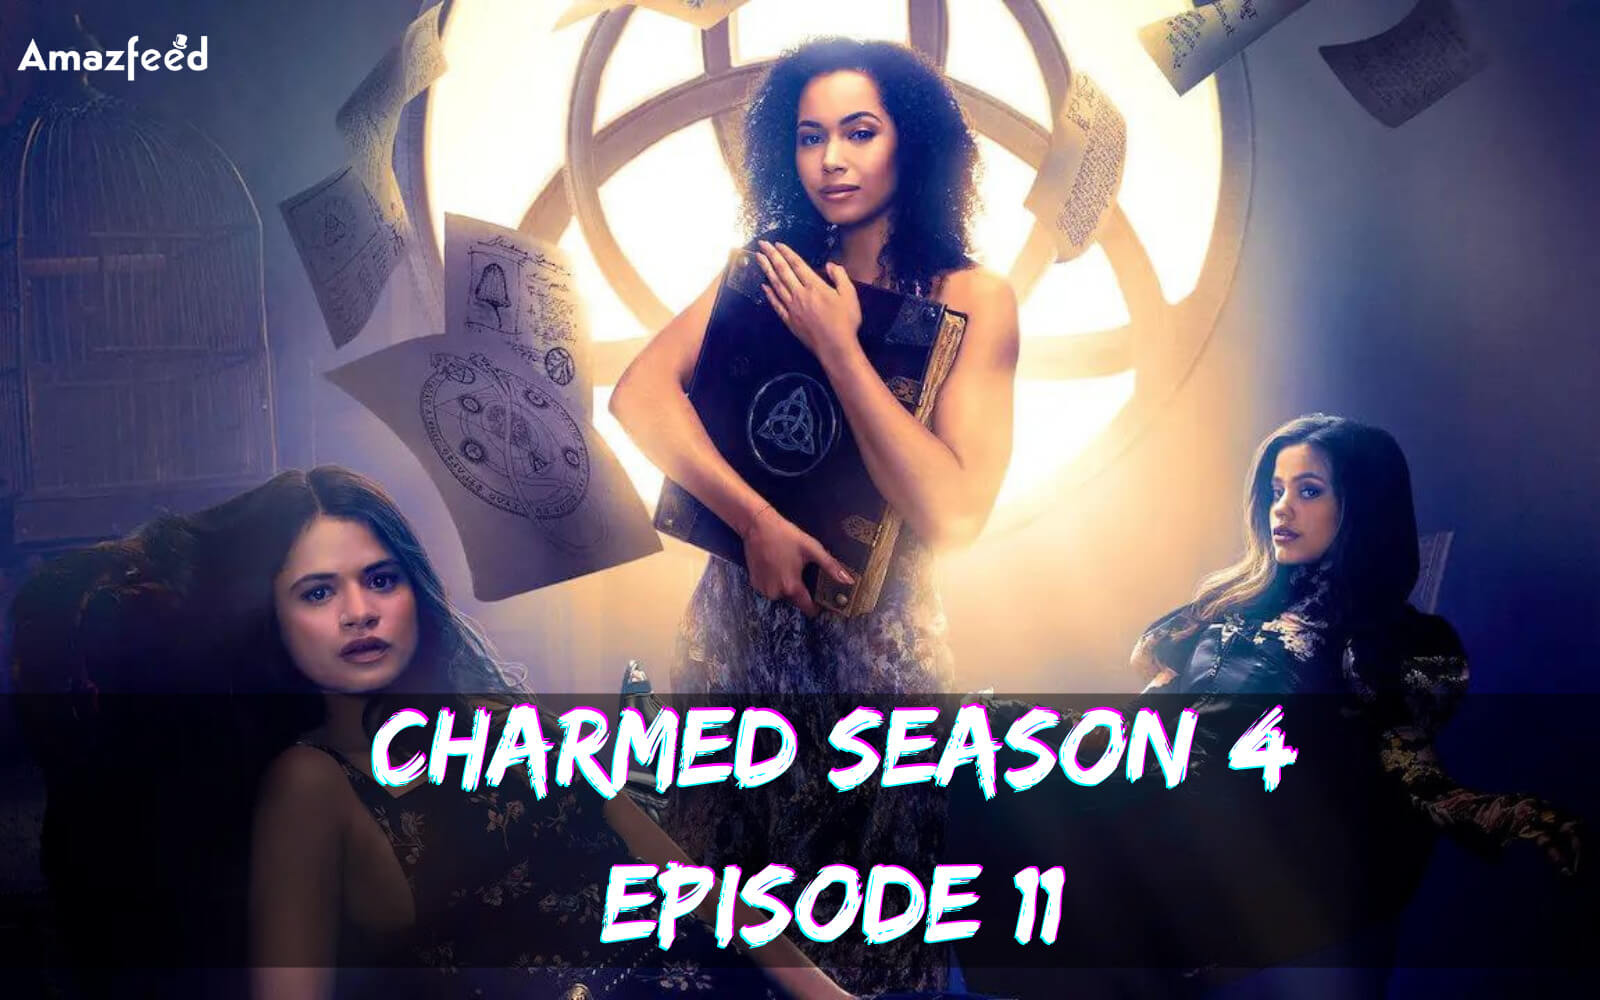 Charmed Season 4 Episode 11 release date